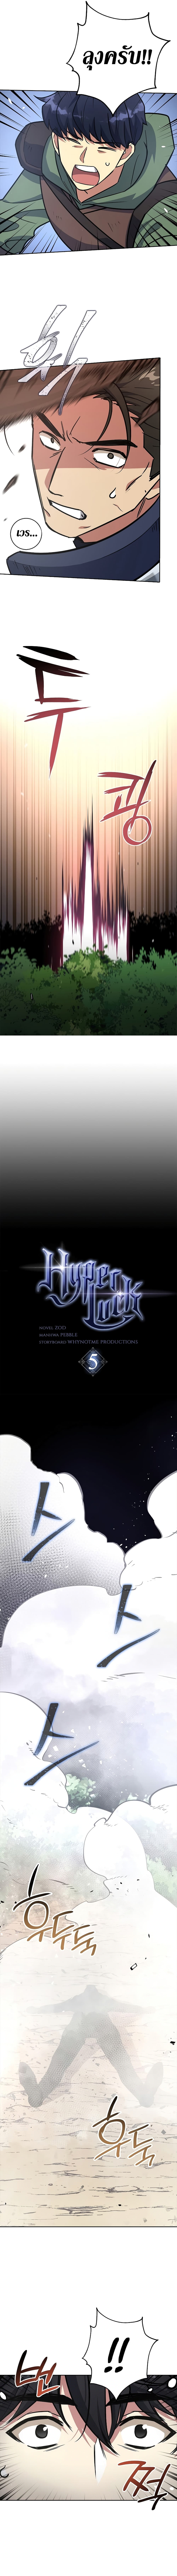 Hyper Luck 5-5